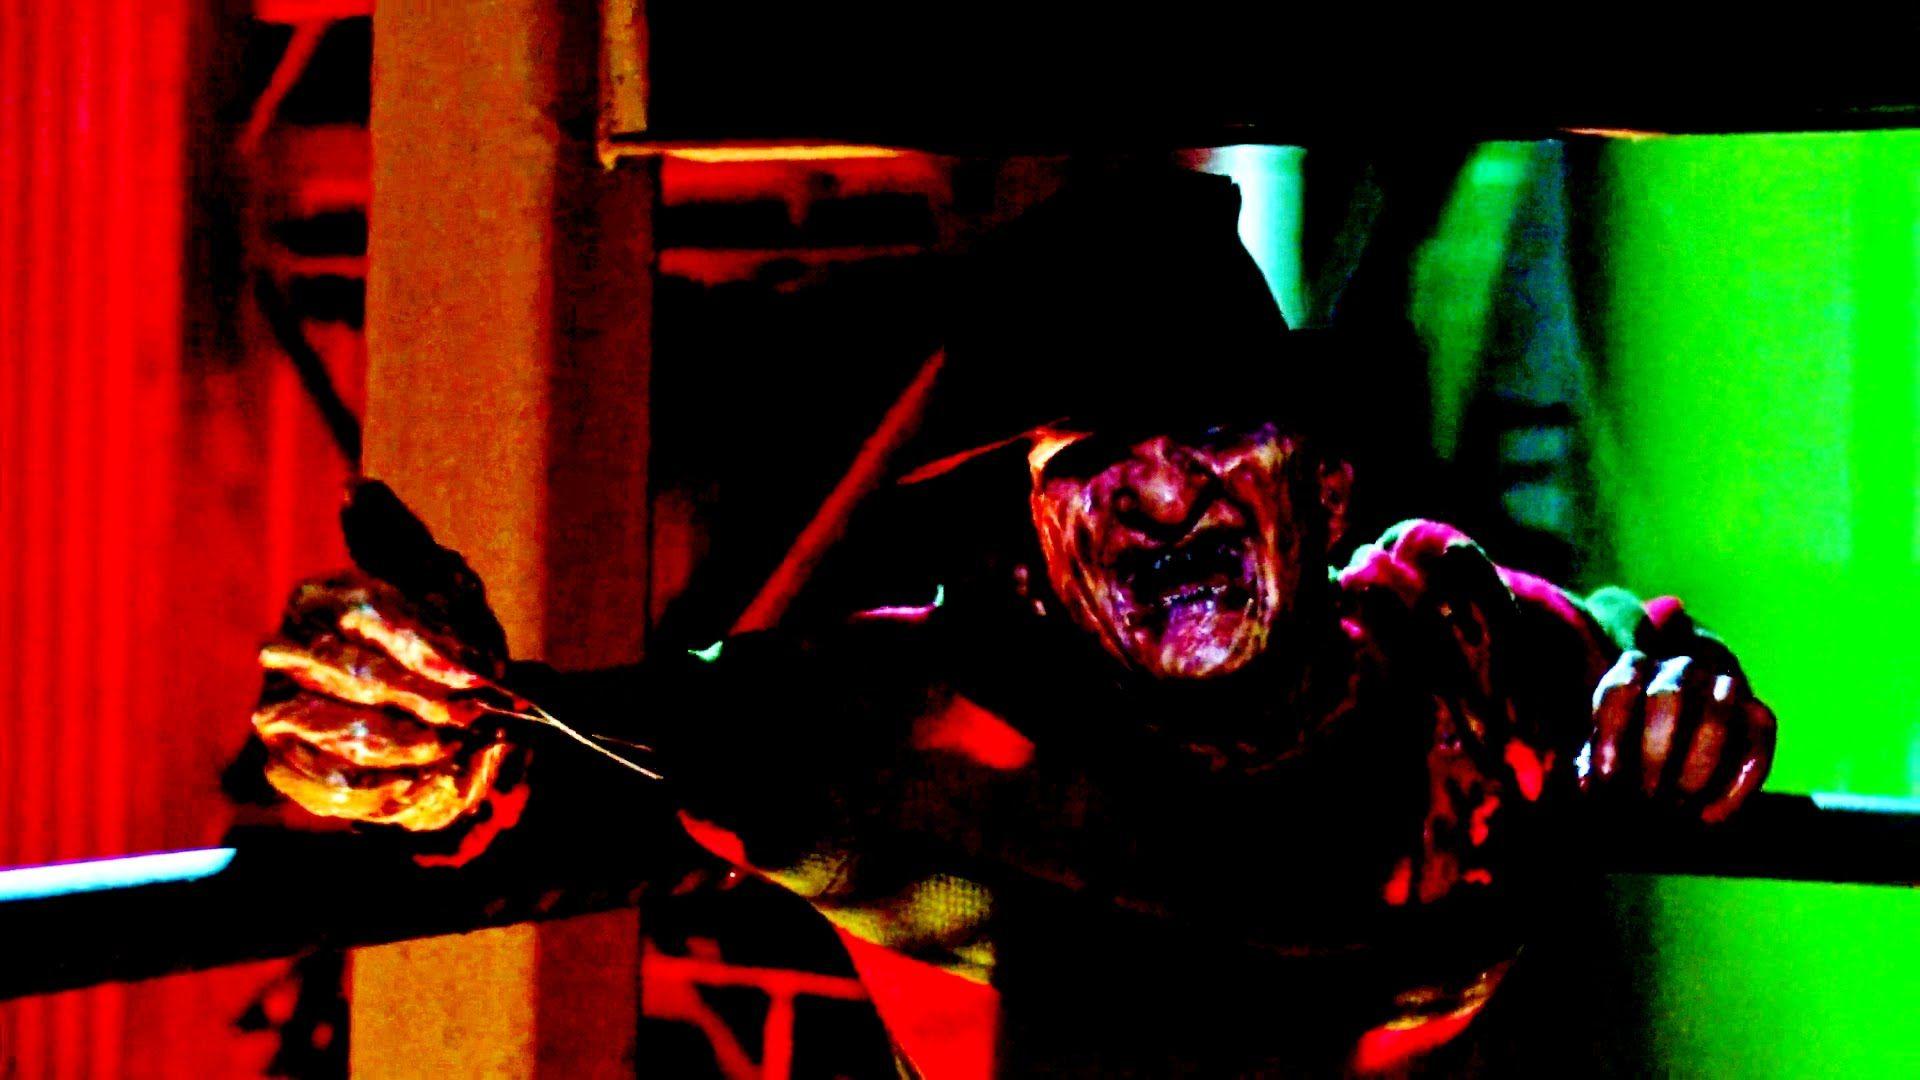 Freddy Krueger To Return In New Nightmare On Elm Street Film